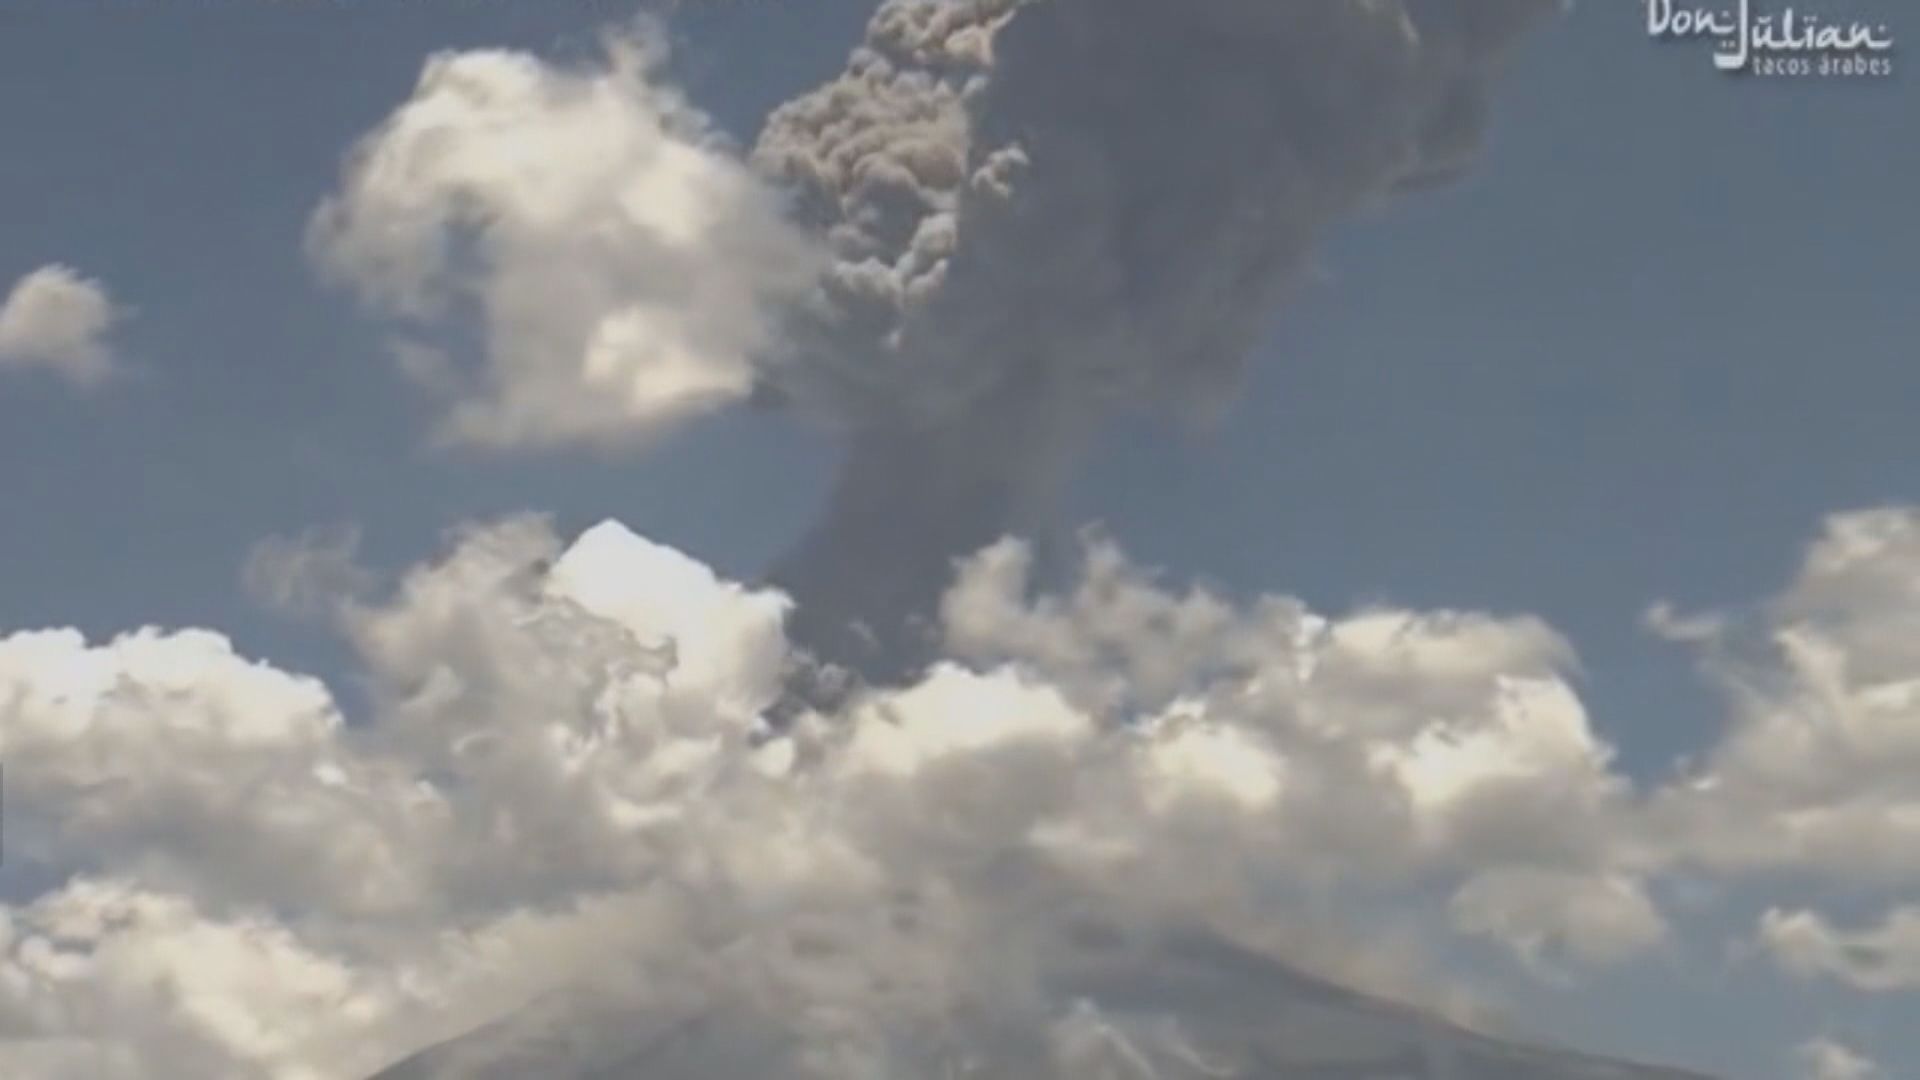 【環球薈報】研究指龐貝古城居民在火山爆發後十五分鐘內死亡